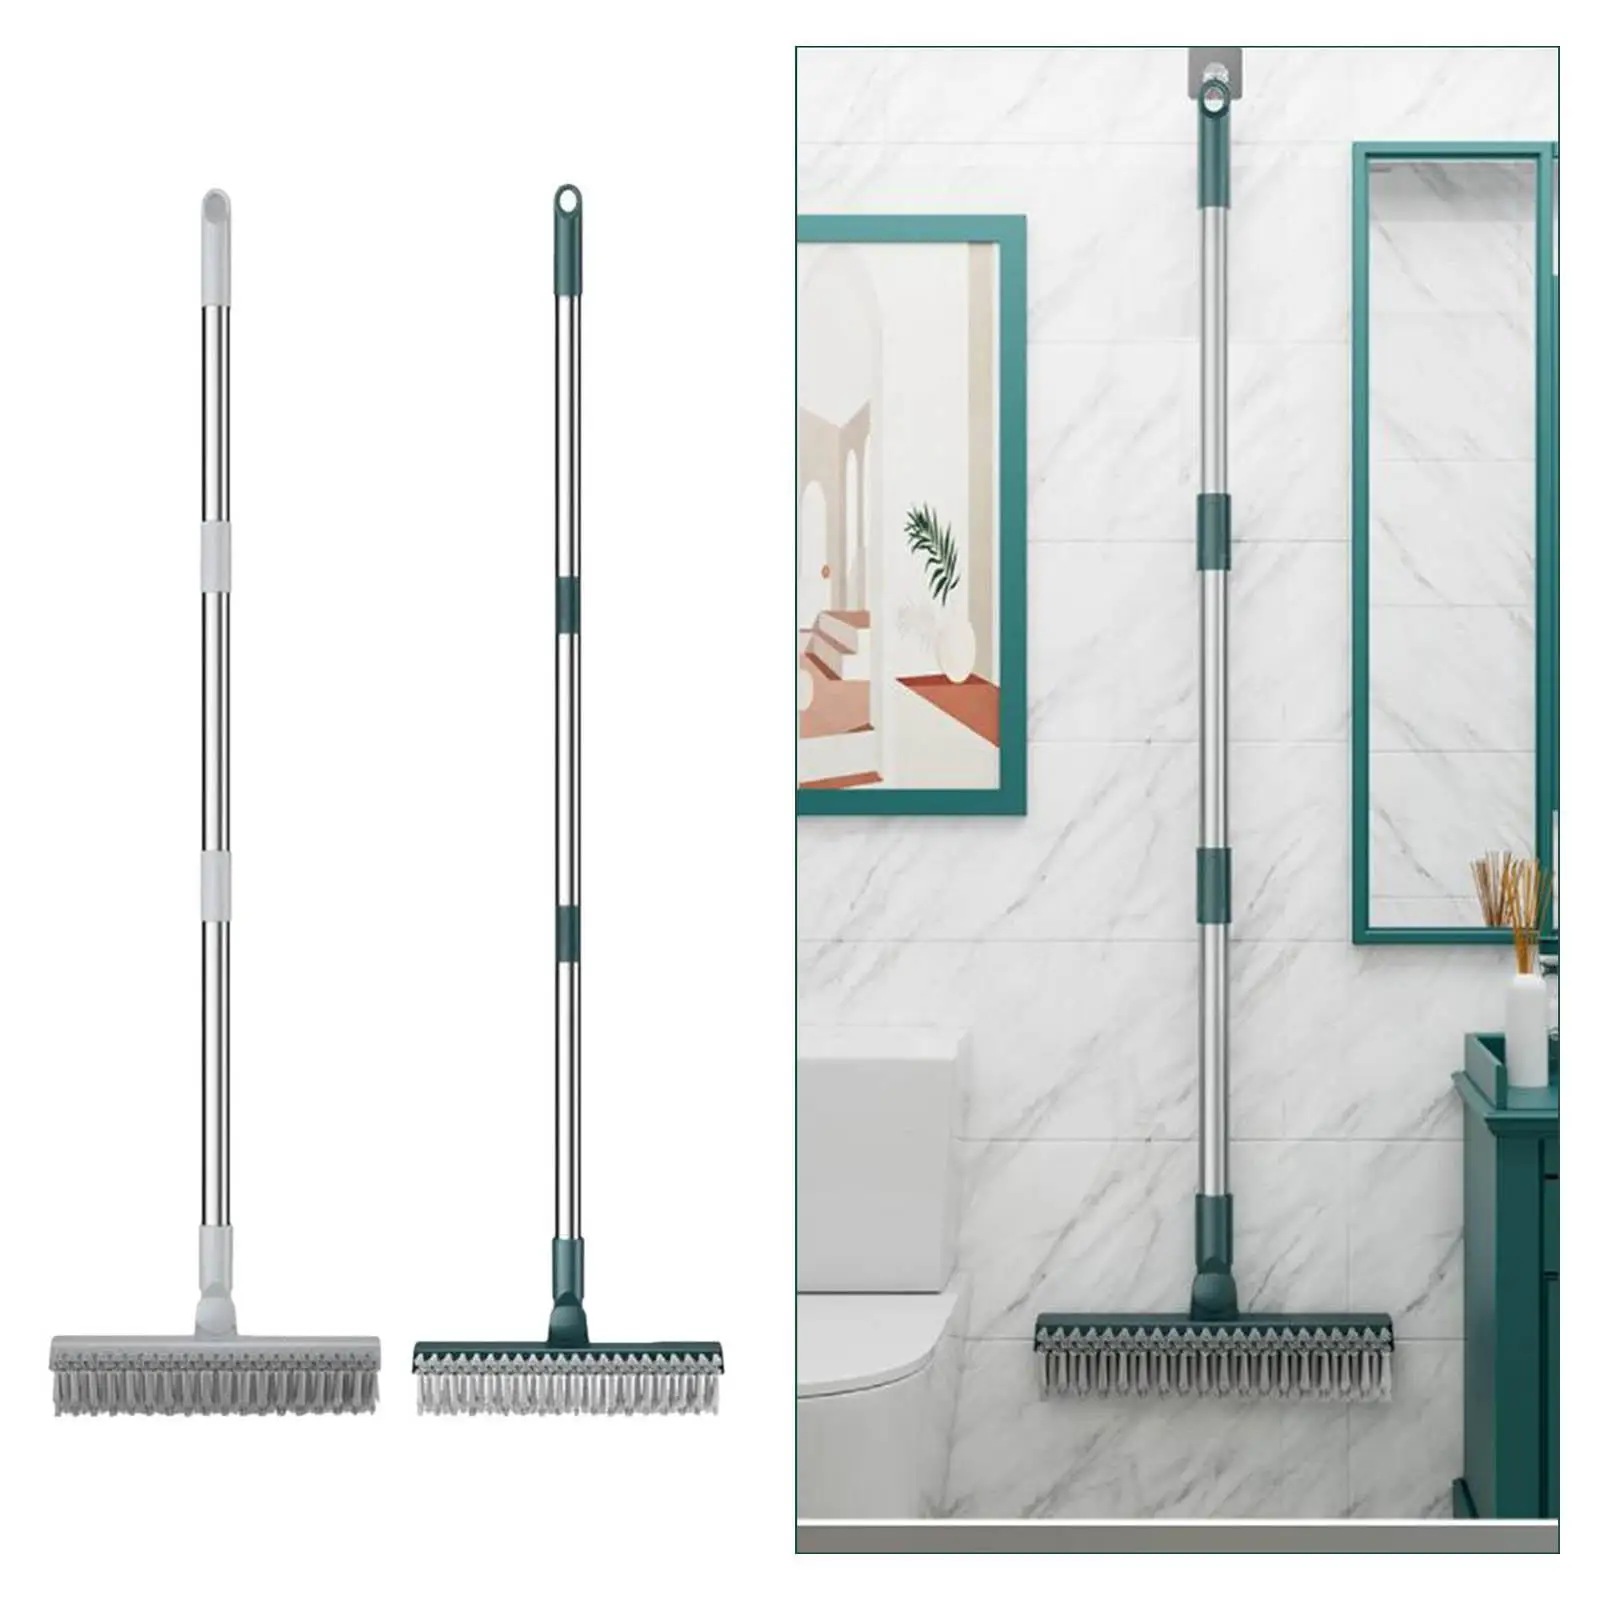 Floor Scrub Brush Stiff Brush Floor Brush Detachable Long Handle Shower Floor Scrubber for Living Room Household Wall Countertop